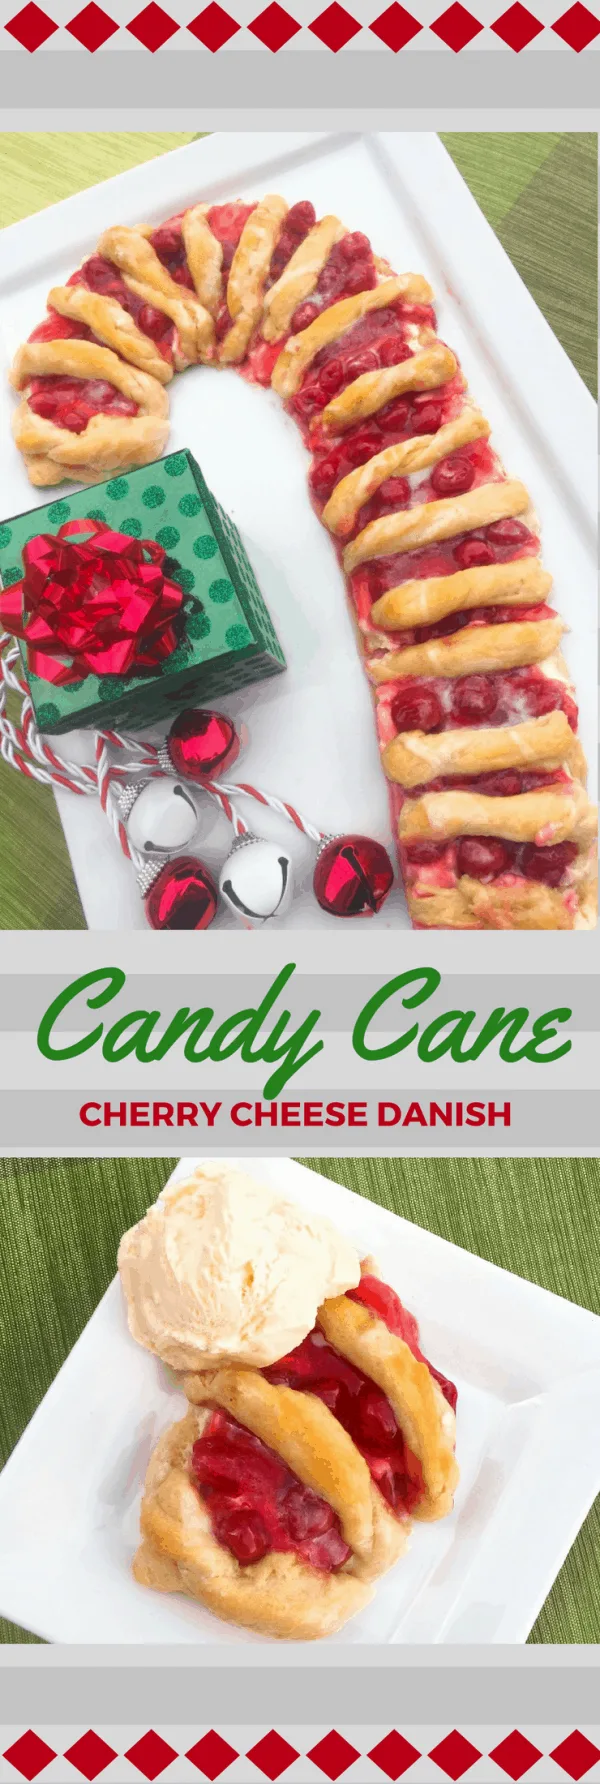 CAndy cane cherry cheese danish